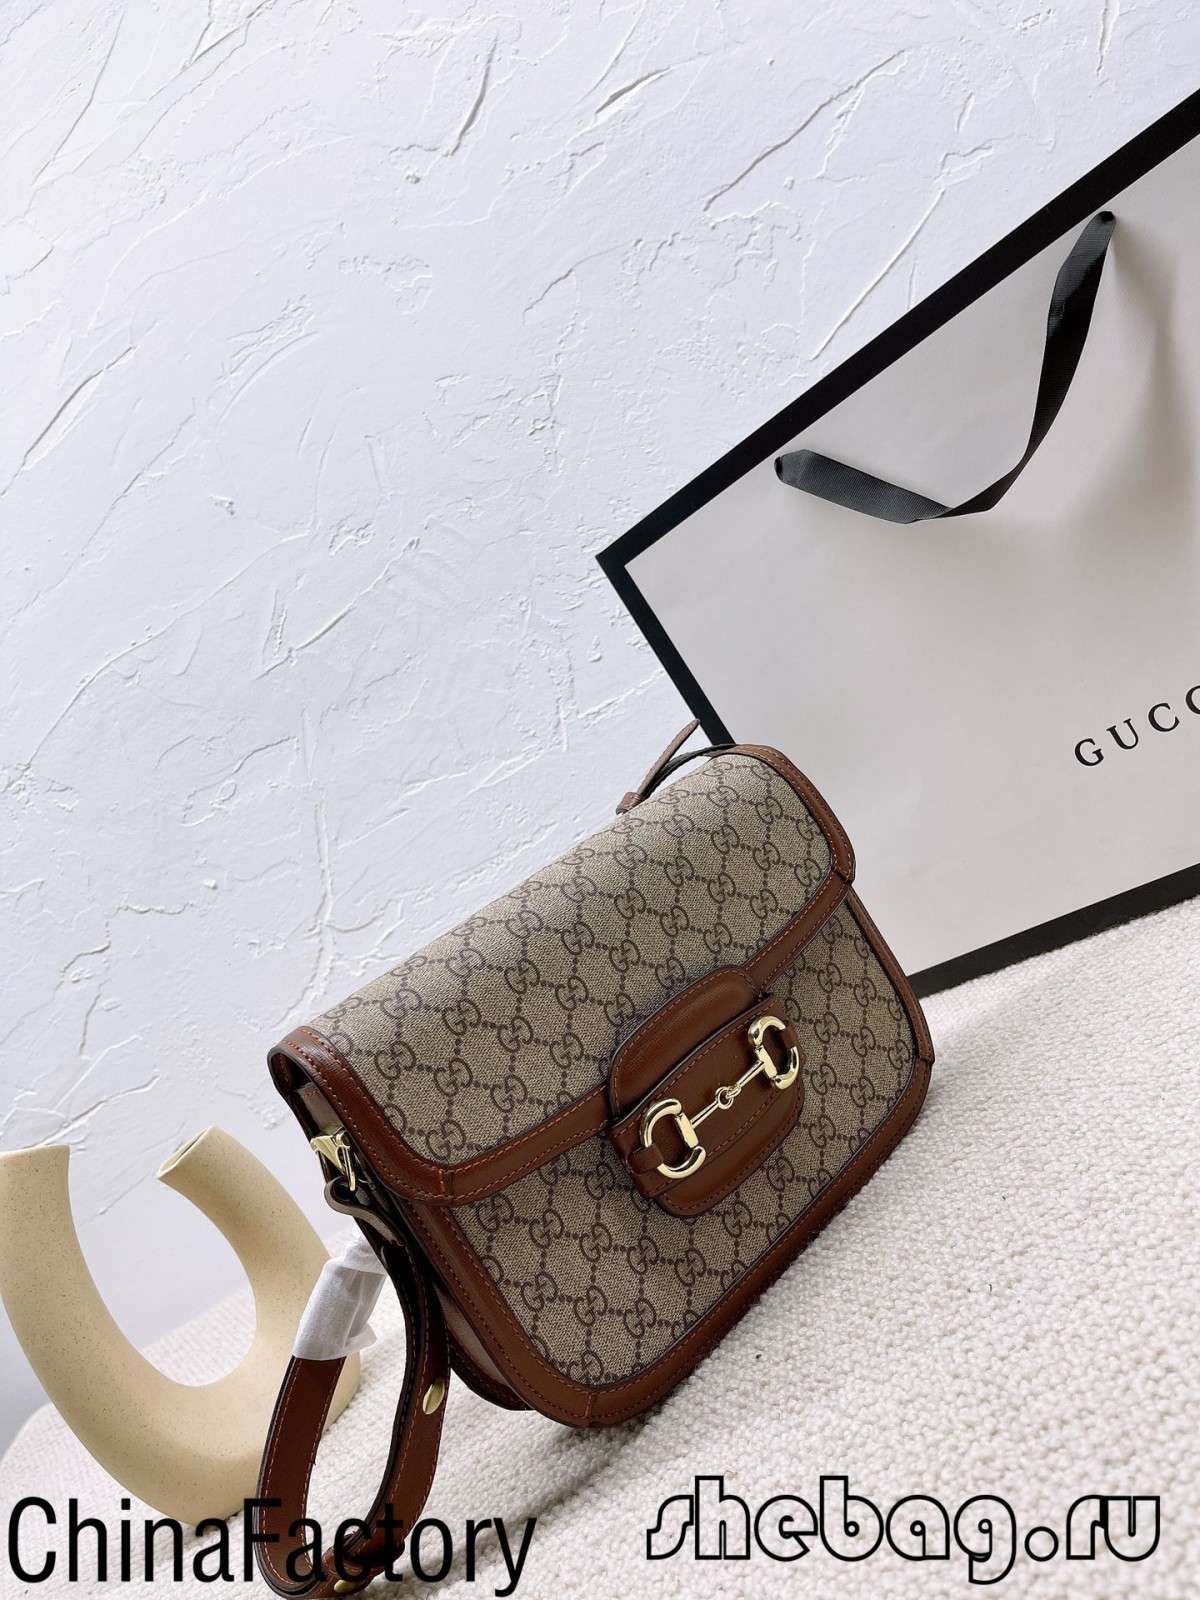 Acquista la replica della borsa hobo Gucci Horse bit: Gucci 1955 (2022 Hottest) -Best Quality Fake Louis Vuitton Bag Online Store, Replica designer bag ru